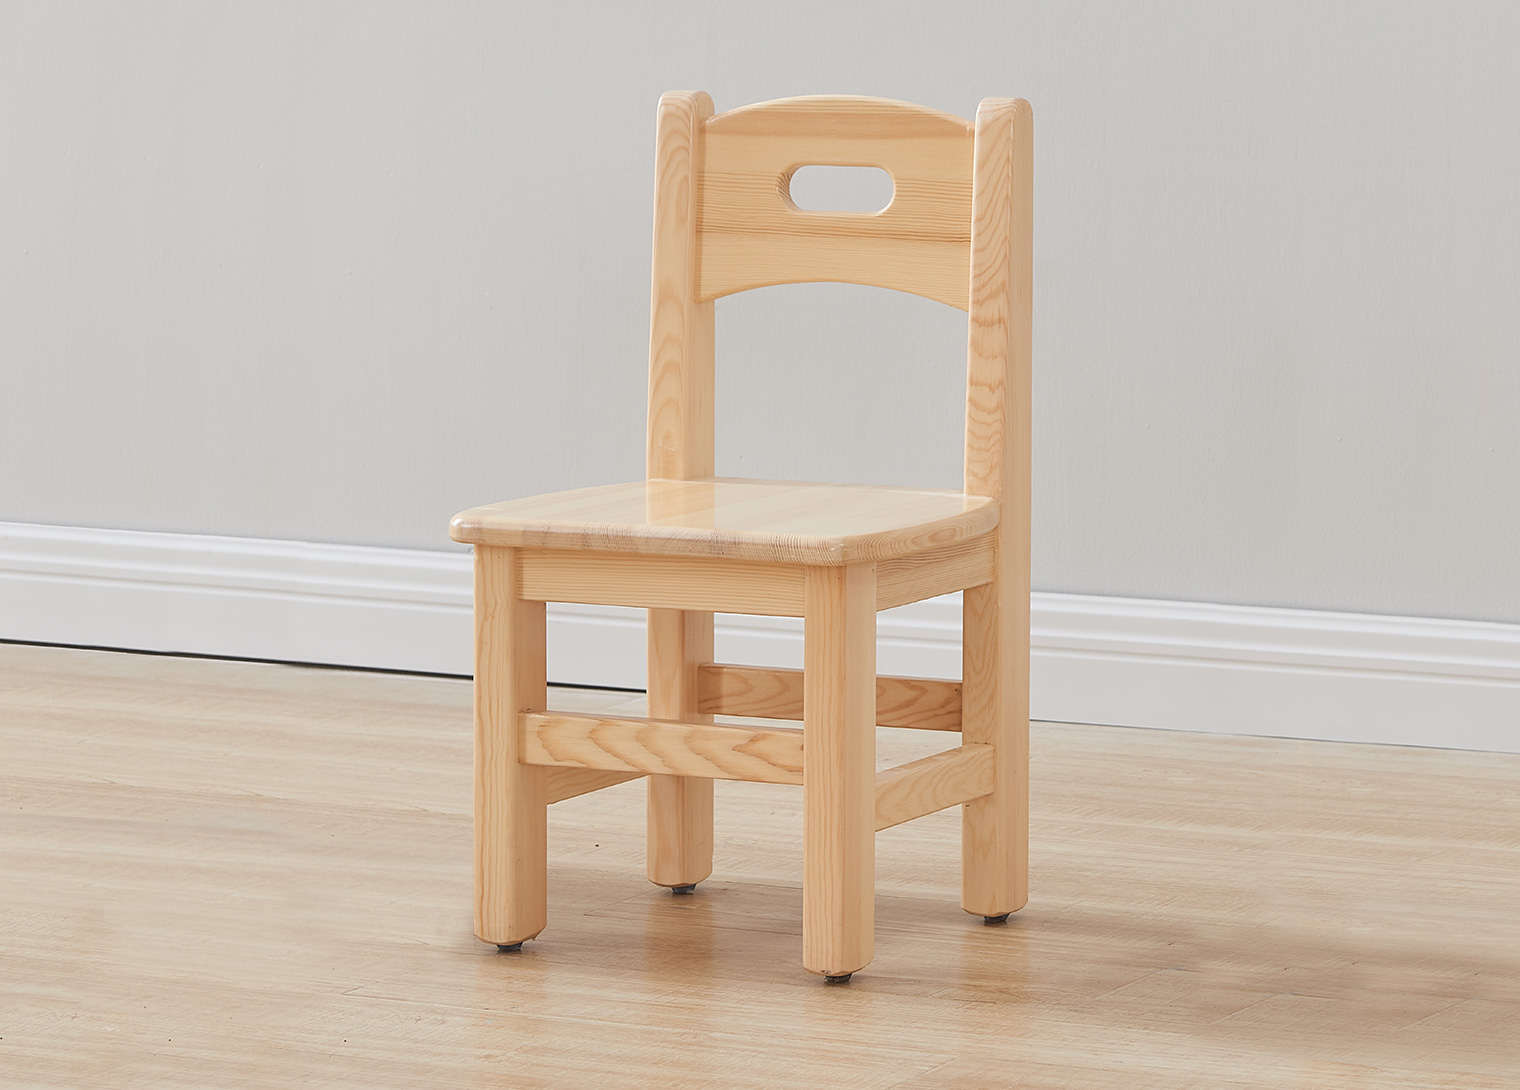 Acar - 260H Wooden Chair